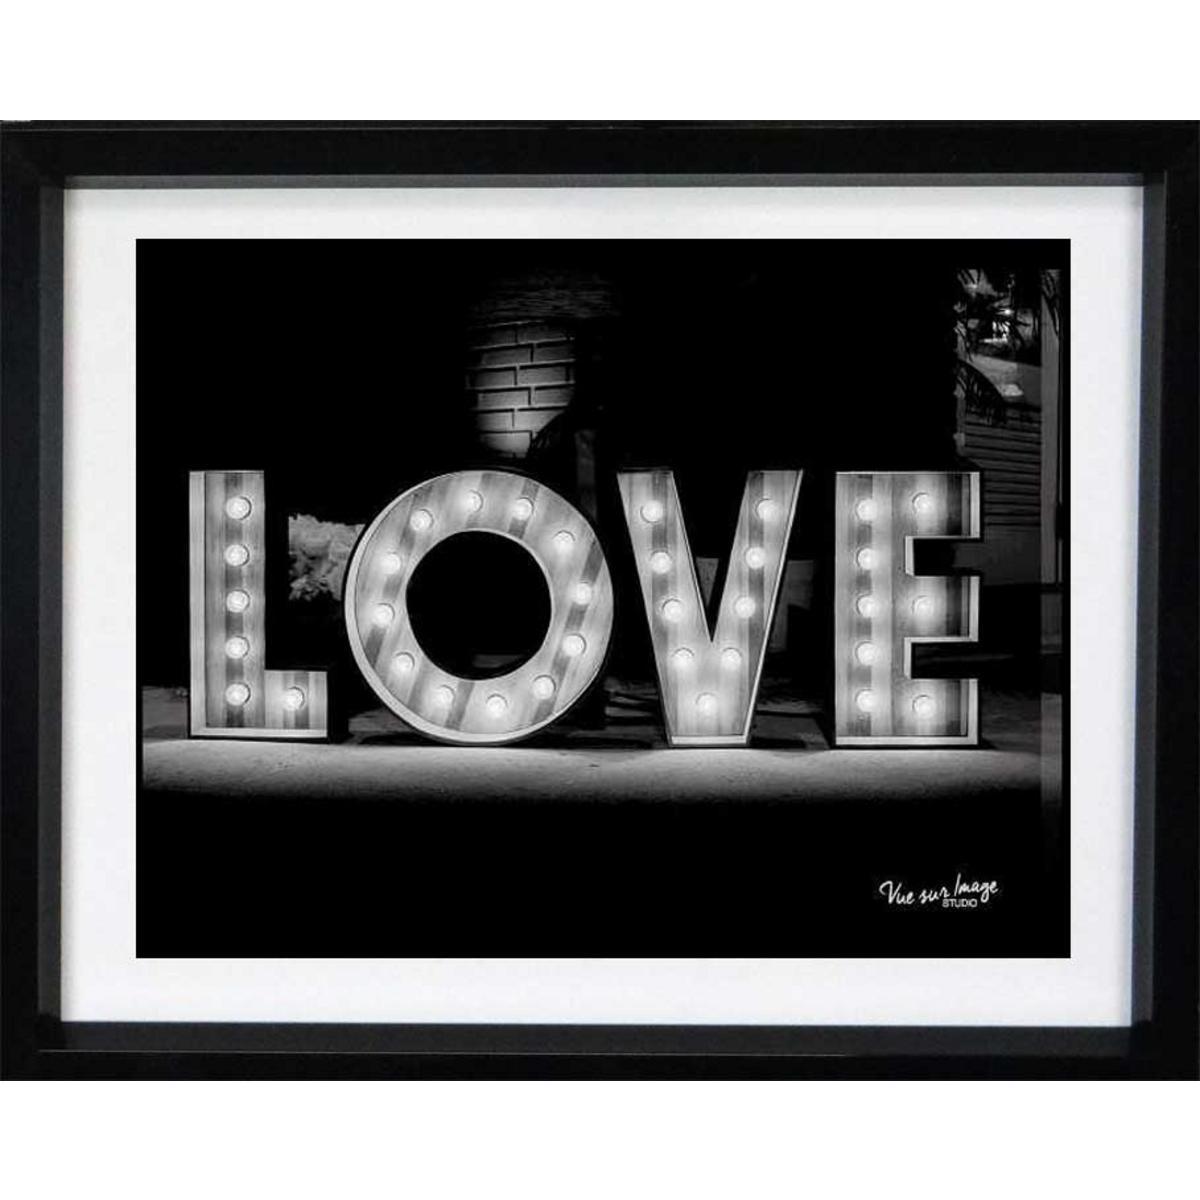 Cadre photo décoratif - Plastique - 25 x 20 cm - Noir et blanc